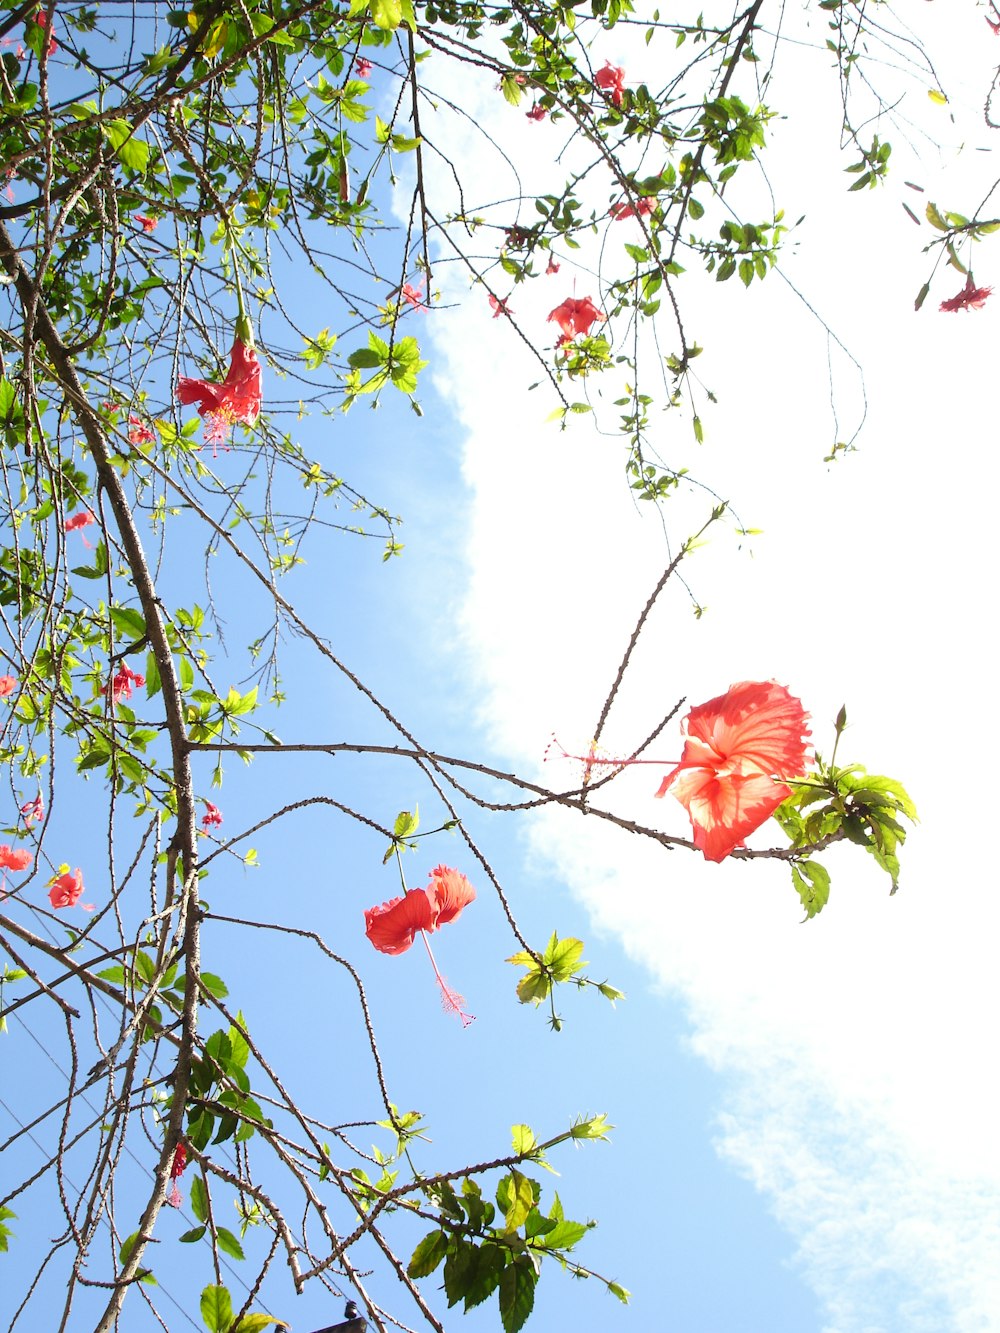 flor vermelha no ramo da árvore durante o dia